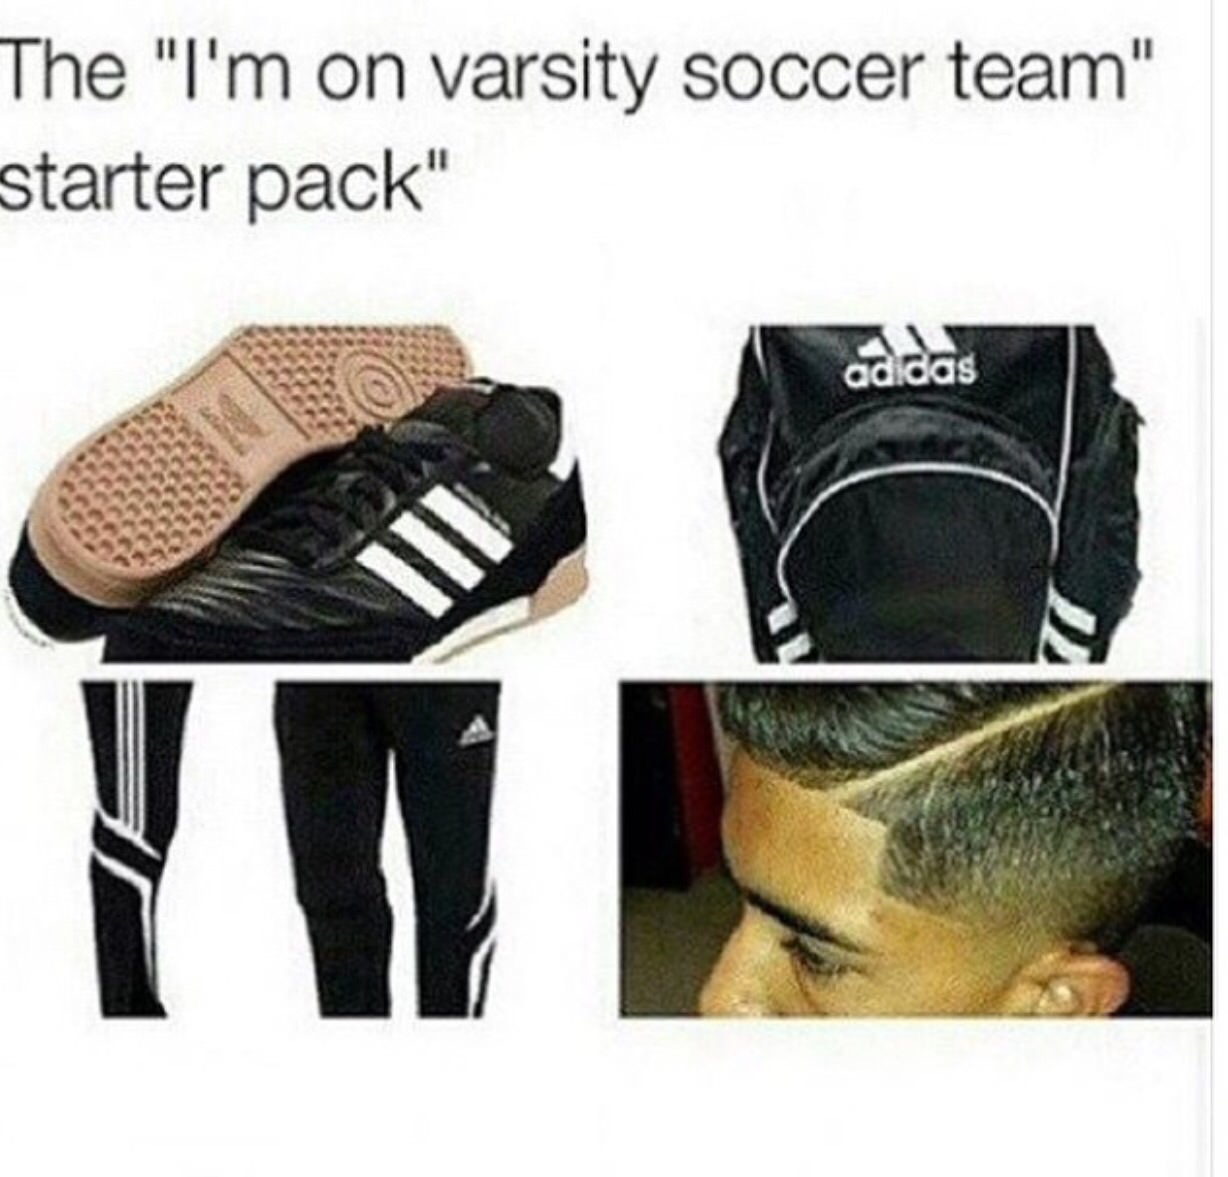 varsity soccer team starter pack - The "I'm on varsity soccer team" starter pack" adidas